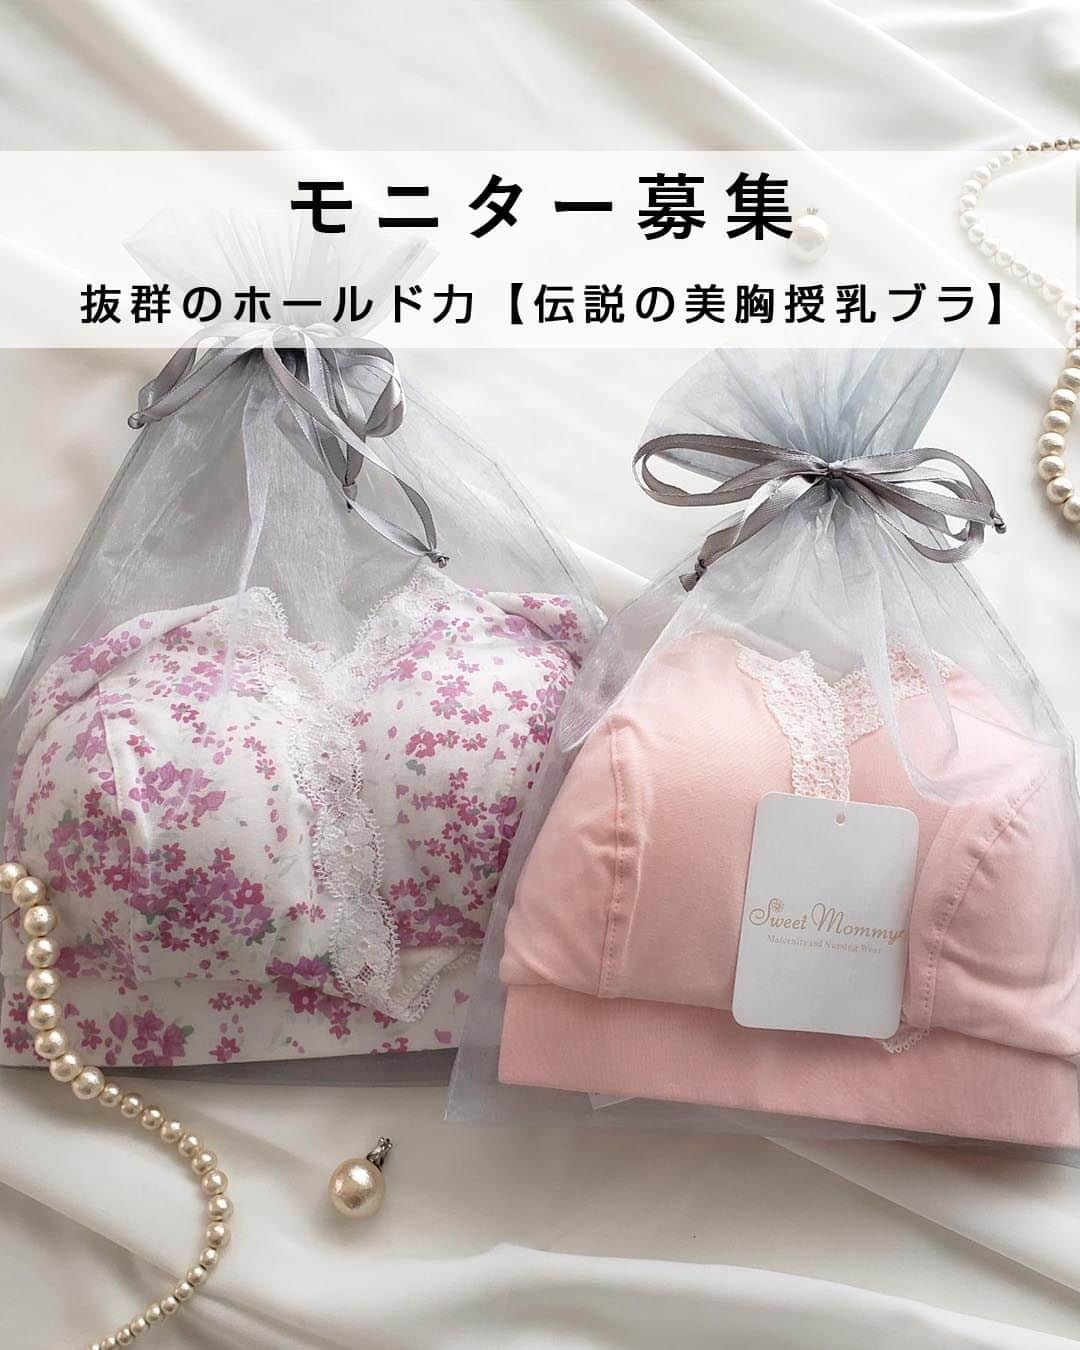 マタニティウェア&授乳服のスウィートマミーのインスタグラム：「先輩ママに大人気！楽天10年間ﾗﾝｷﾝｸﾞ1位、伝説と呼ばれる美胸授乳ブラの モニター募集いたします📢  ノンワイヤーなのに、しっかり支え、ホールド力抜群。 こだわりの日本国内生産、赤ちゃんが触れても安心なプレミアムコットン素材使用、 または内側はオーガニックコットン素材使用、敏感肌ママも安心してお使いいただけます。 スウィートマミーが長年時間かけて開発した 産前産後のママのための授乳しやすく、胸の形もきれいに保てる美胸ブラです。  今回は選べる2タイプ 【カシュクールタイプ】or【フルカップタイプ】  どちらも、締め付けの少ない極太アンダーや脇肉をキャッチしてくれる脇高設計など、 嬉しい機能が沢山つまっています♡  今回、こちらのブラをモニターしてくださる方を5名募集します！ お願いしたい内容は、ご着用写真をいただけるととっても嬉しいですが、 着用はちょっと、、という方は フィット感、使用感などのご感想をご共有いただくだけでもOKです🙆‍♀️  当選者の方にはお好きなカラーとサイズをお選びいただけます。  ❁ご当選のDMをお送りしてから12/19(火)の17時までにお返事のない方は当選が無効となります。あらかじめご了承ください。  ＝＝＝＝＝＝＝＝＝＝＝＝＝＝  ♡募集内容詳細♡  　˗ˏˋ募集人数ˎˊ˗  5名様 商品発送後の変更はでき兼ねます。ご了承ください。  　˗ˏˋ応募条件ˎˊ˗  @sweetmommyofficial　のフォロワー様 （新規フォローも大歓迎です❣）  　˗ˏˋ応募方法ˎˊ˗  ❶ こちらの𝗉𝗈𝗌𝗍をストーリーで @sweetmommyofficial　をメンションしてシェア  ✈︎ストーリー投稿方法 ・この投稿のコメント横にある「紙飛行機マーク」をタップ ・ストーリーズに投稿を追加をタップ ・@sweetmommyofficial　をメンション ・通常通りストーリーズを投稿 ⁡ ❷ こちらの𝗉𝗈𝗌𝗍にいいね♡＆コメント✎𓂃 ・【カシュクールタイプ】or【フルカップタイプ】どちらをお試しになりたいかコメントで教えてください♡ ⁡ ❸ コメントにこちらからの "いいね♡" で応募完了です！ ⁡  　˗ˏˋ募集期間ˎˊ˗  12/15(金)～12/18(月)15時まで ご当選者様に12/18(月)17時以降に、こちらからDMでご連絡させていただきます。  【 注意事項 】 ⚠️ご応募の際は必ずお読みください。 ※プレゼント当選者様は商品到着から【10日以内にお写真提供とInstagramへのご投稿】をお願いいたします。 ご提供いただいたお写真は弊社のSNSや商品ページ、広告の素材として使用させていただきます。 ※賞品の発送は日本国内に限らせていただきます。 ※非公開（鍵付き）アカウントからのご投稿は選考の対象外となります。 ※当選連絡後、指定期間内にご連絡の取れない場合は、当選の権利を無効とさせていただく場合がございます。 ※メッセージを送らせていただく際にフォローいただけていない場合、当選が無効になる場合がございます。 ※スウィートマミー®︎の公式Instagramアカウントを模倣した偽アカウントが発生する可能性がございますので、十分ご注意ください。 　クレジットカード情報や銀行口座等をお聞きすることは決してございません。 ※当選の有無に関するお問い合わせについてはお答えできません。 ※当選者にご提供いただいた個人情報は、プレゼントの発送目的以外の用途には使用いたしません。 ※当キャンペーンは予告なく変更、中止する場合がございます。 ※本キャンペーンはmeta社・Instagramが関与するものではございません。  #授乳ブラ #マタニティブラ #ノンワイヤー #シームレスブラ #sweetmommy #授乳服 #妊婦コーデ #マタニティーコーデ #マタニティコーデ #マタニティグッズ #出産準備購入品 #出産祝いにオススメ #出産準備リスト #妊娠日記 #ママでも綺麗でいたい #ベビー用品準備 #妊婦ファッション #赤ちゃんと暮らす #マタアカさんと繋がりたい #プレゼントキャンペーン #プレゼント企画 #キャンペーン #キャンペーン実施中 #モニターモデル #モニターモデル募集 #モニターモデル募集中 #モニター募集」